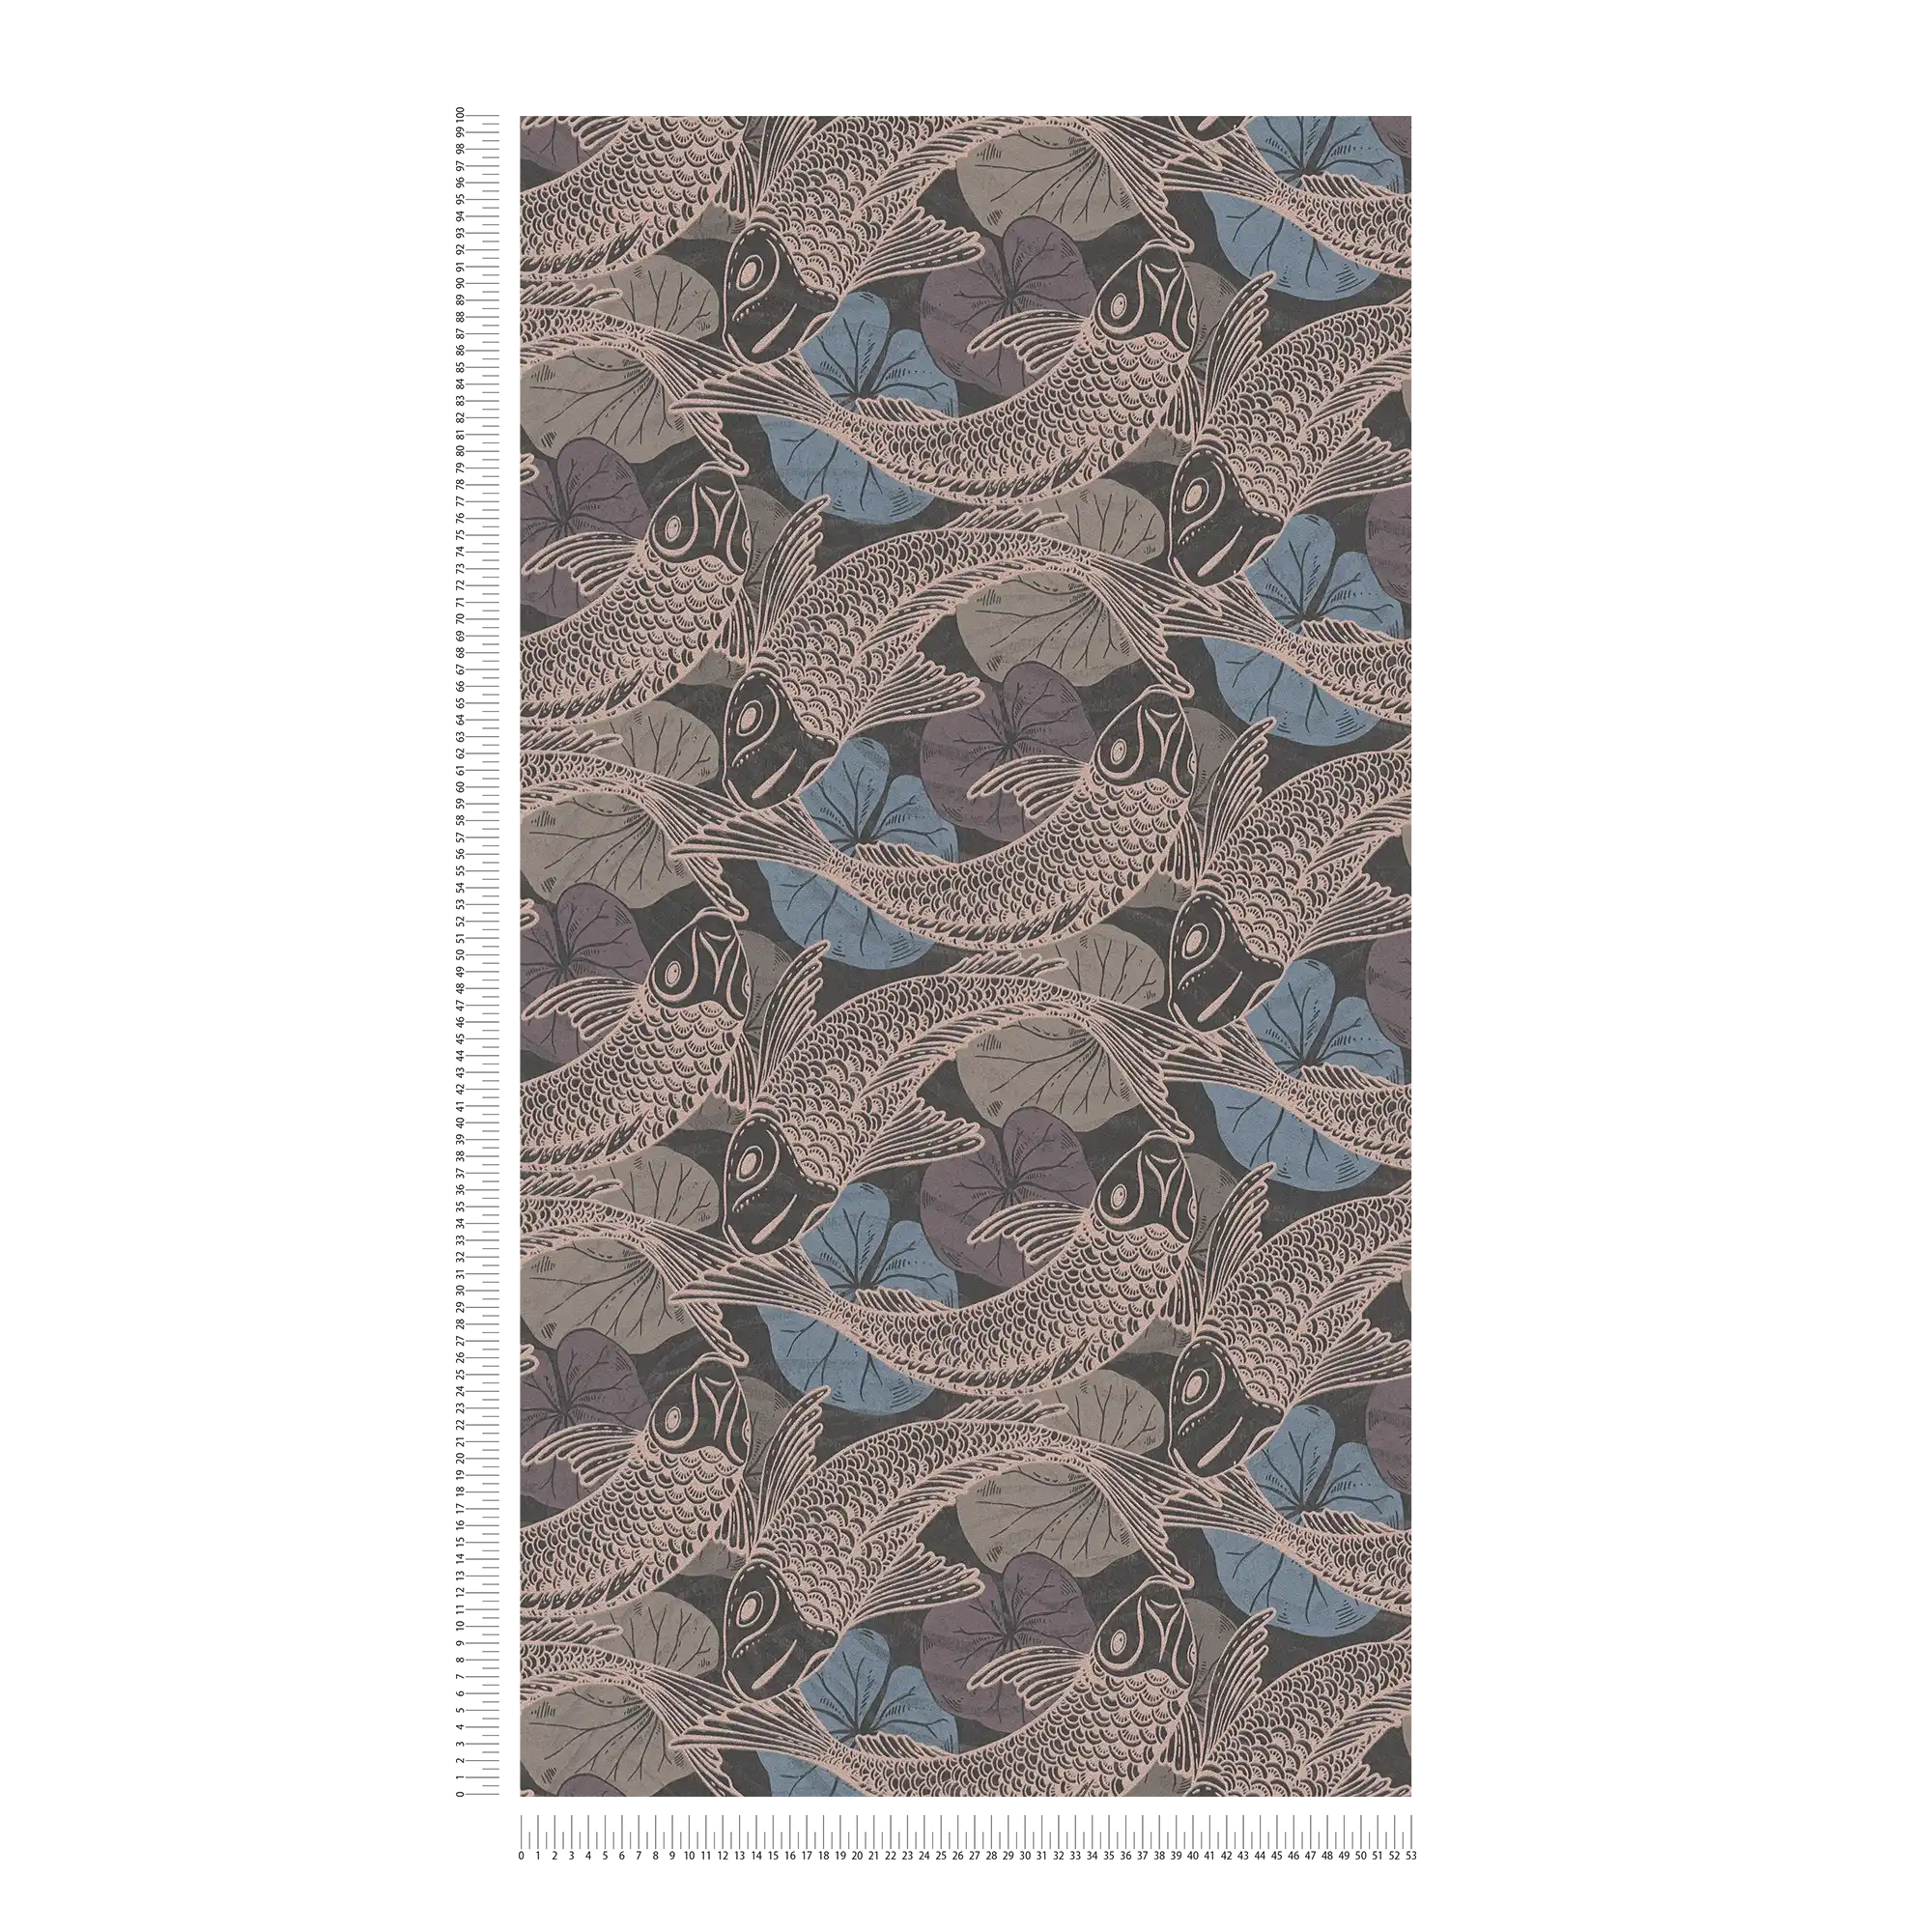             Vliesbehang Aziatisch Koi design met metallic effect - blauw, metallic, zwart
        